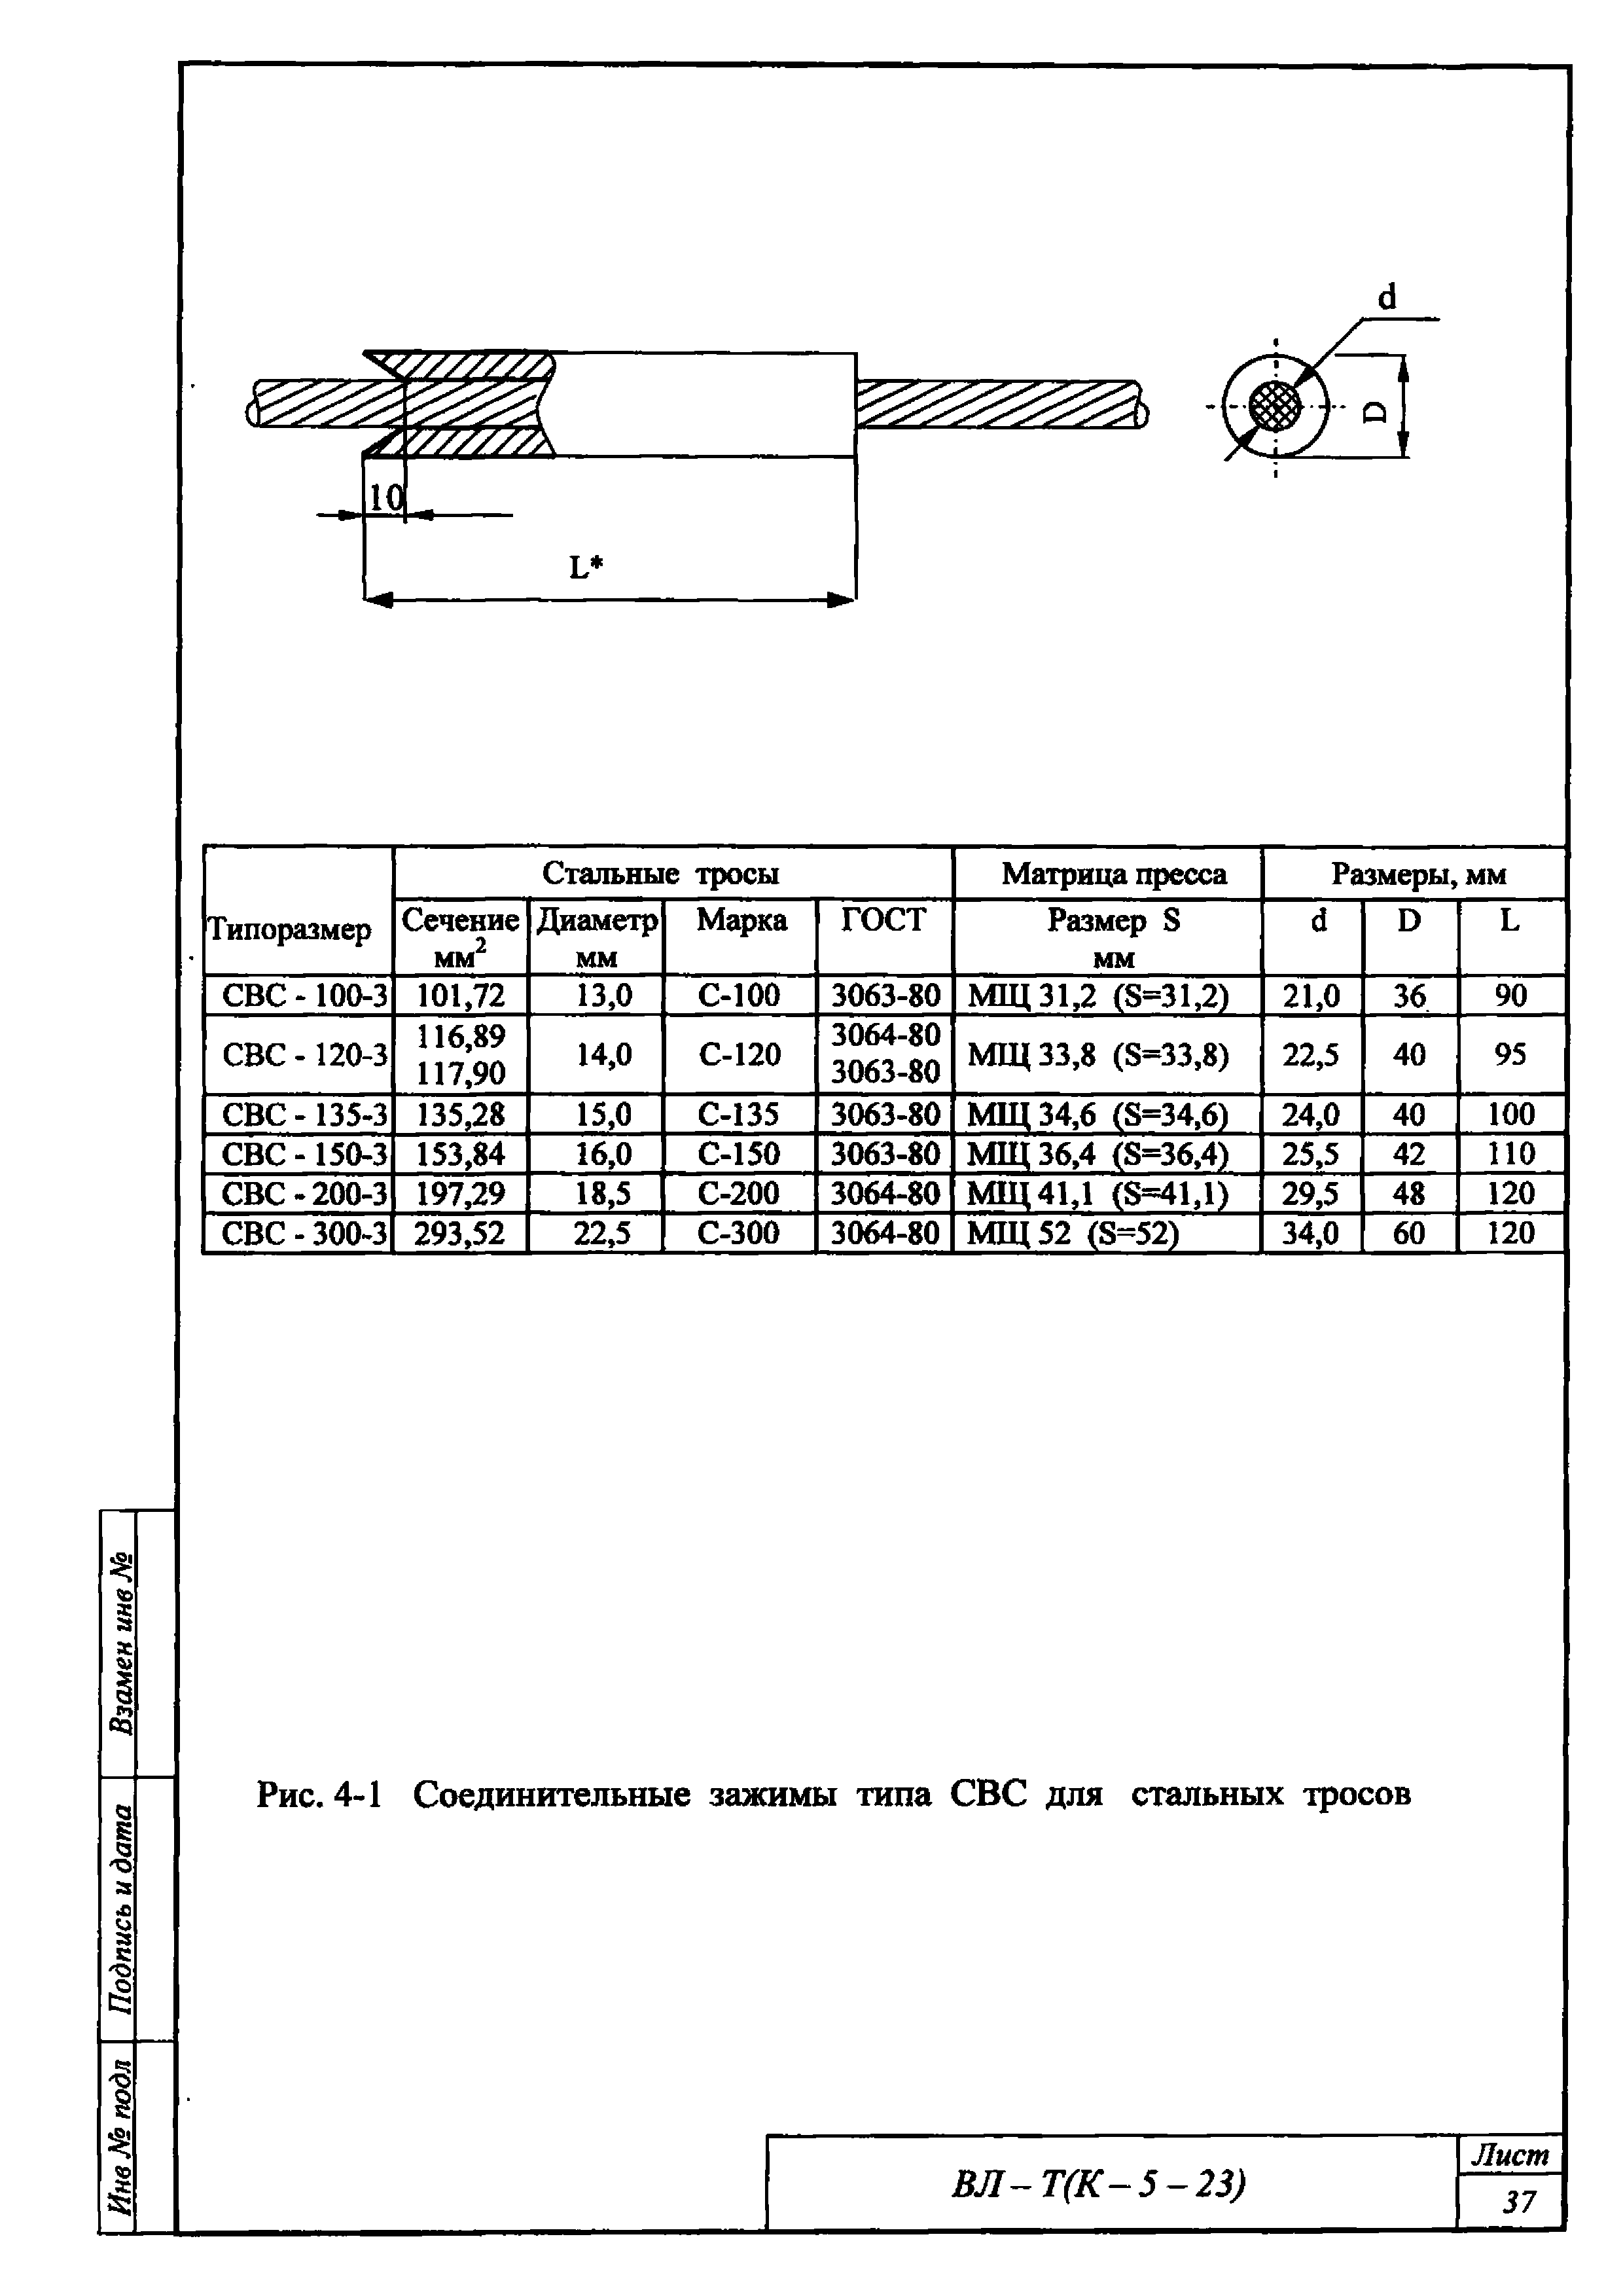 Технологическая карта К-5-23-4